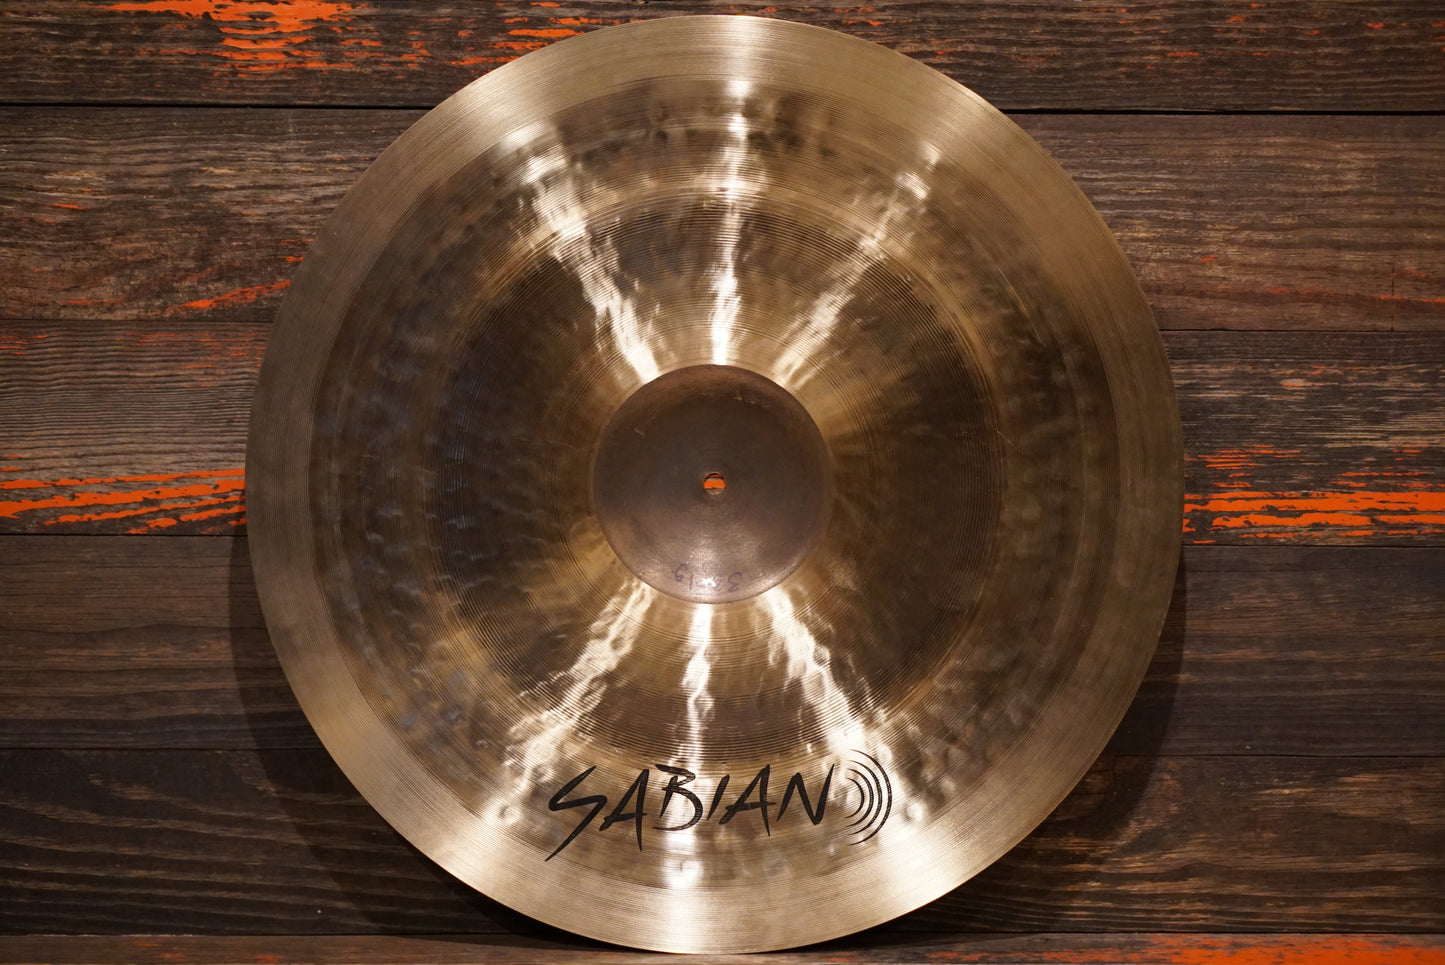 Sabian 22" AAX Heavy Ride Cymbal - 3201g